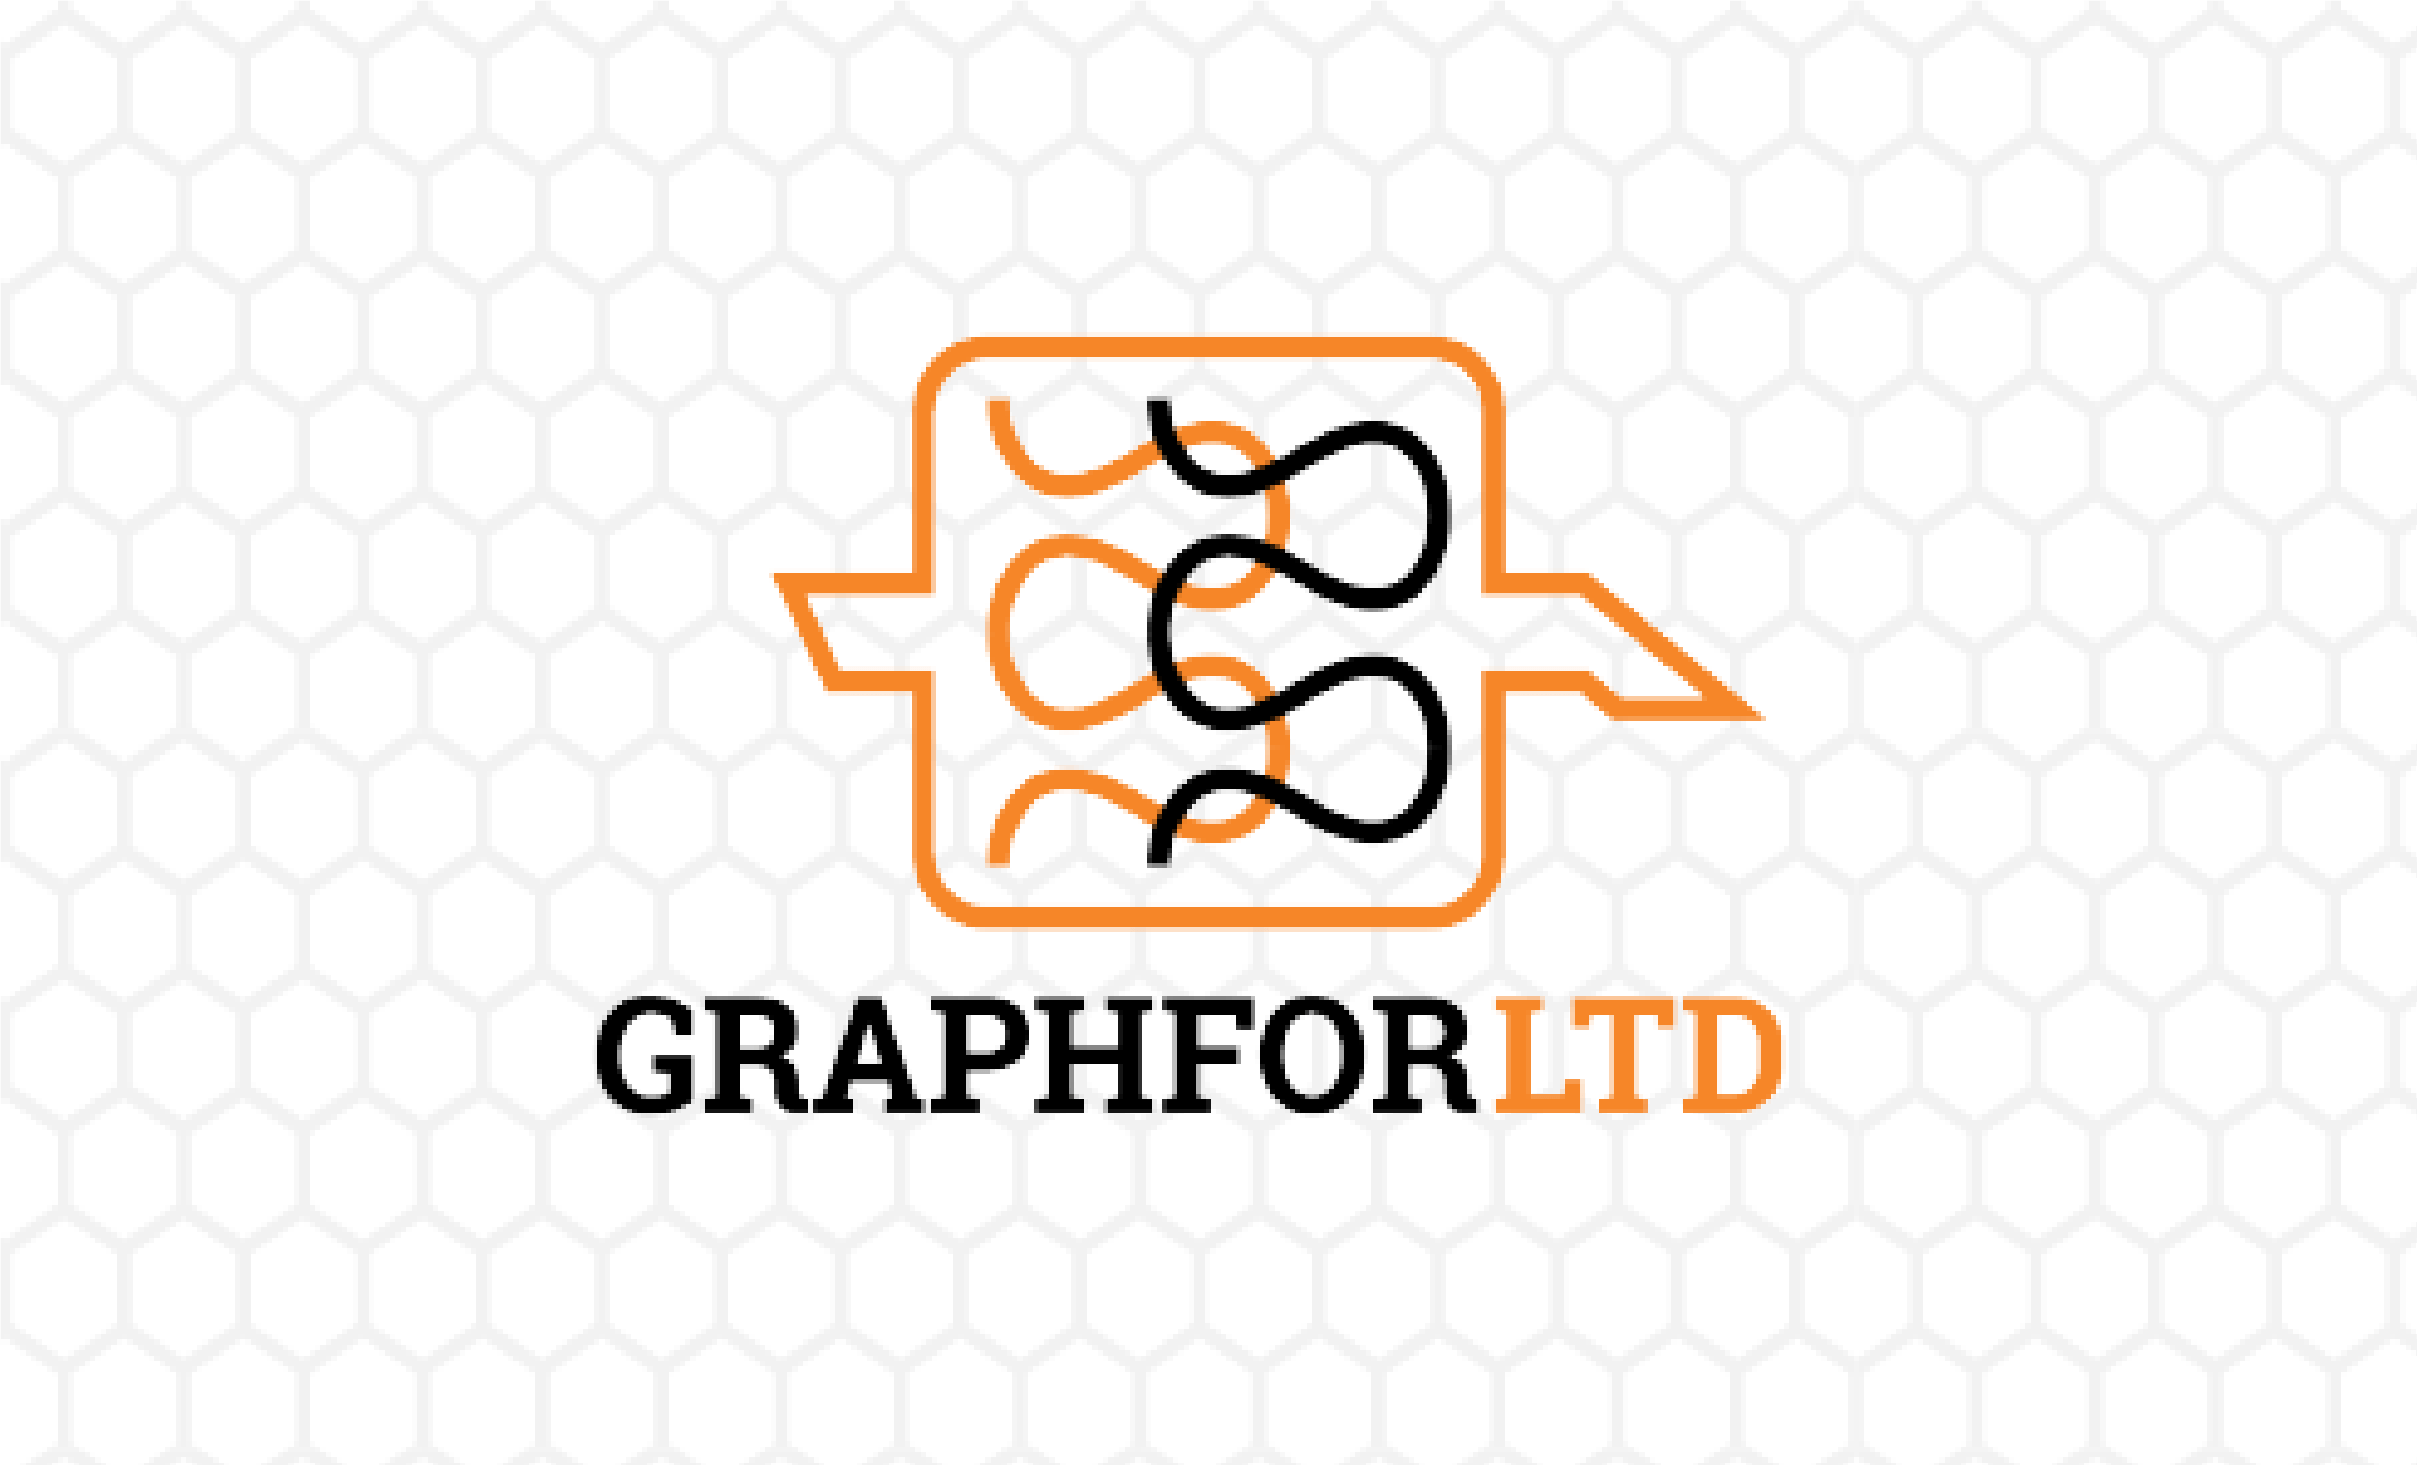 Graphfor – Let your branding do the talking